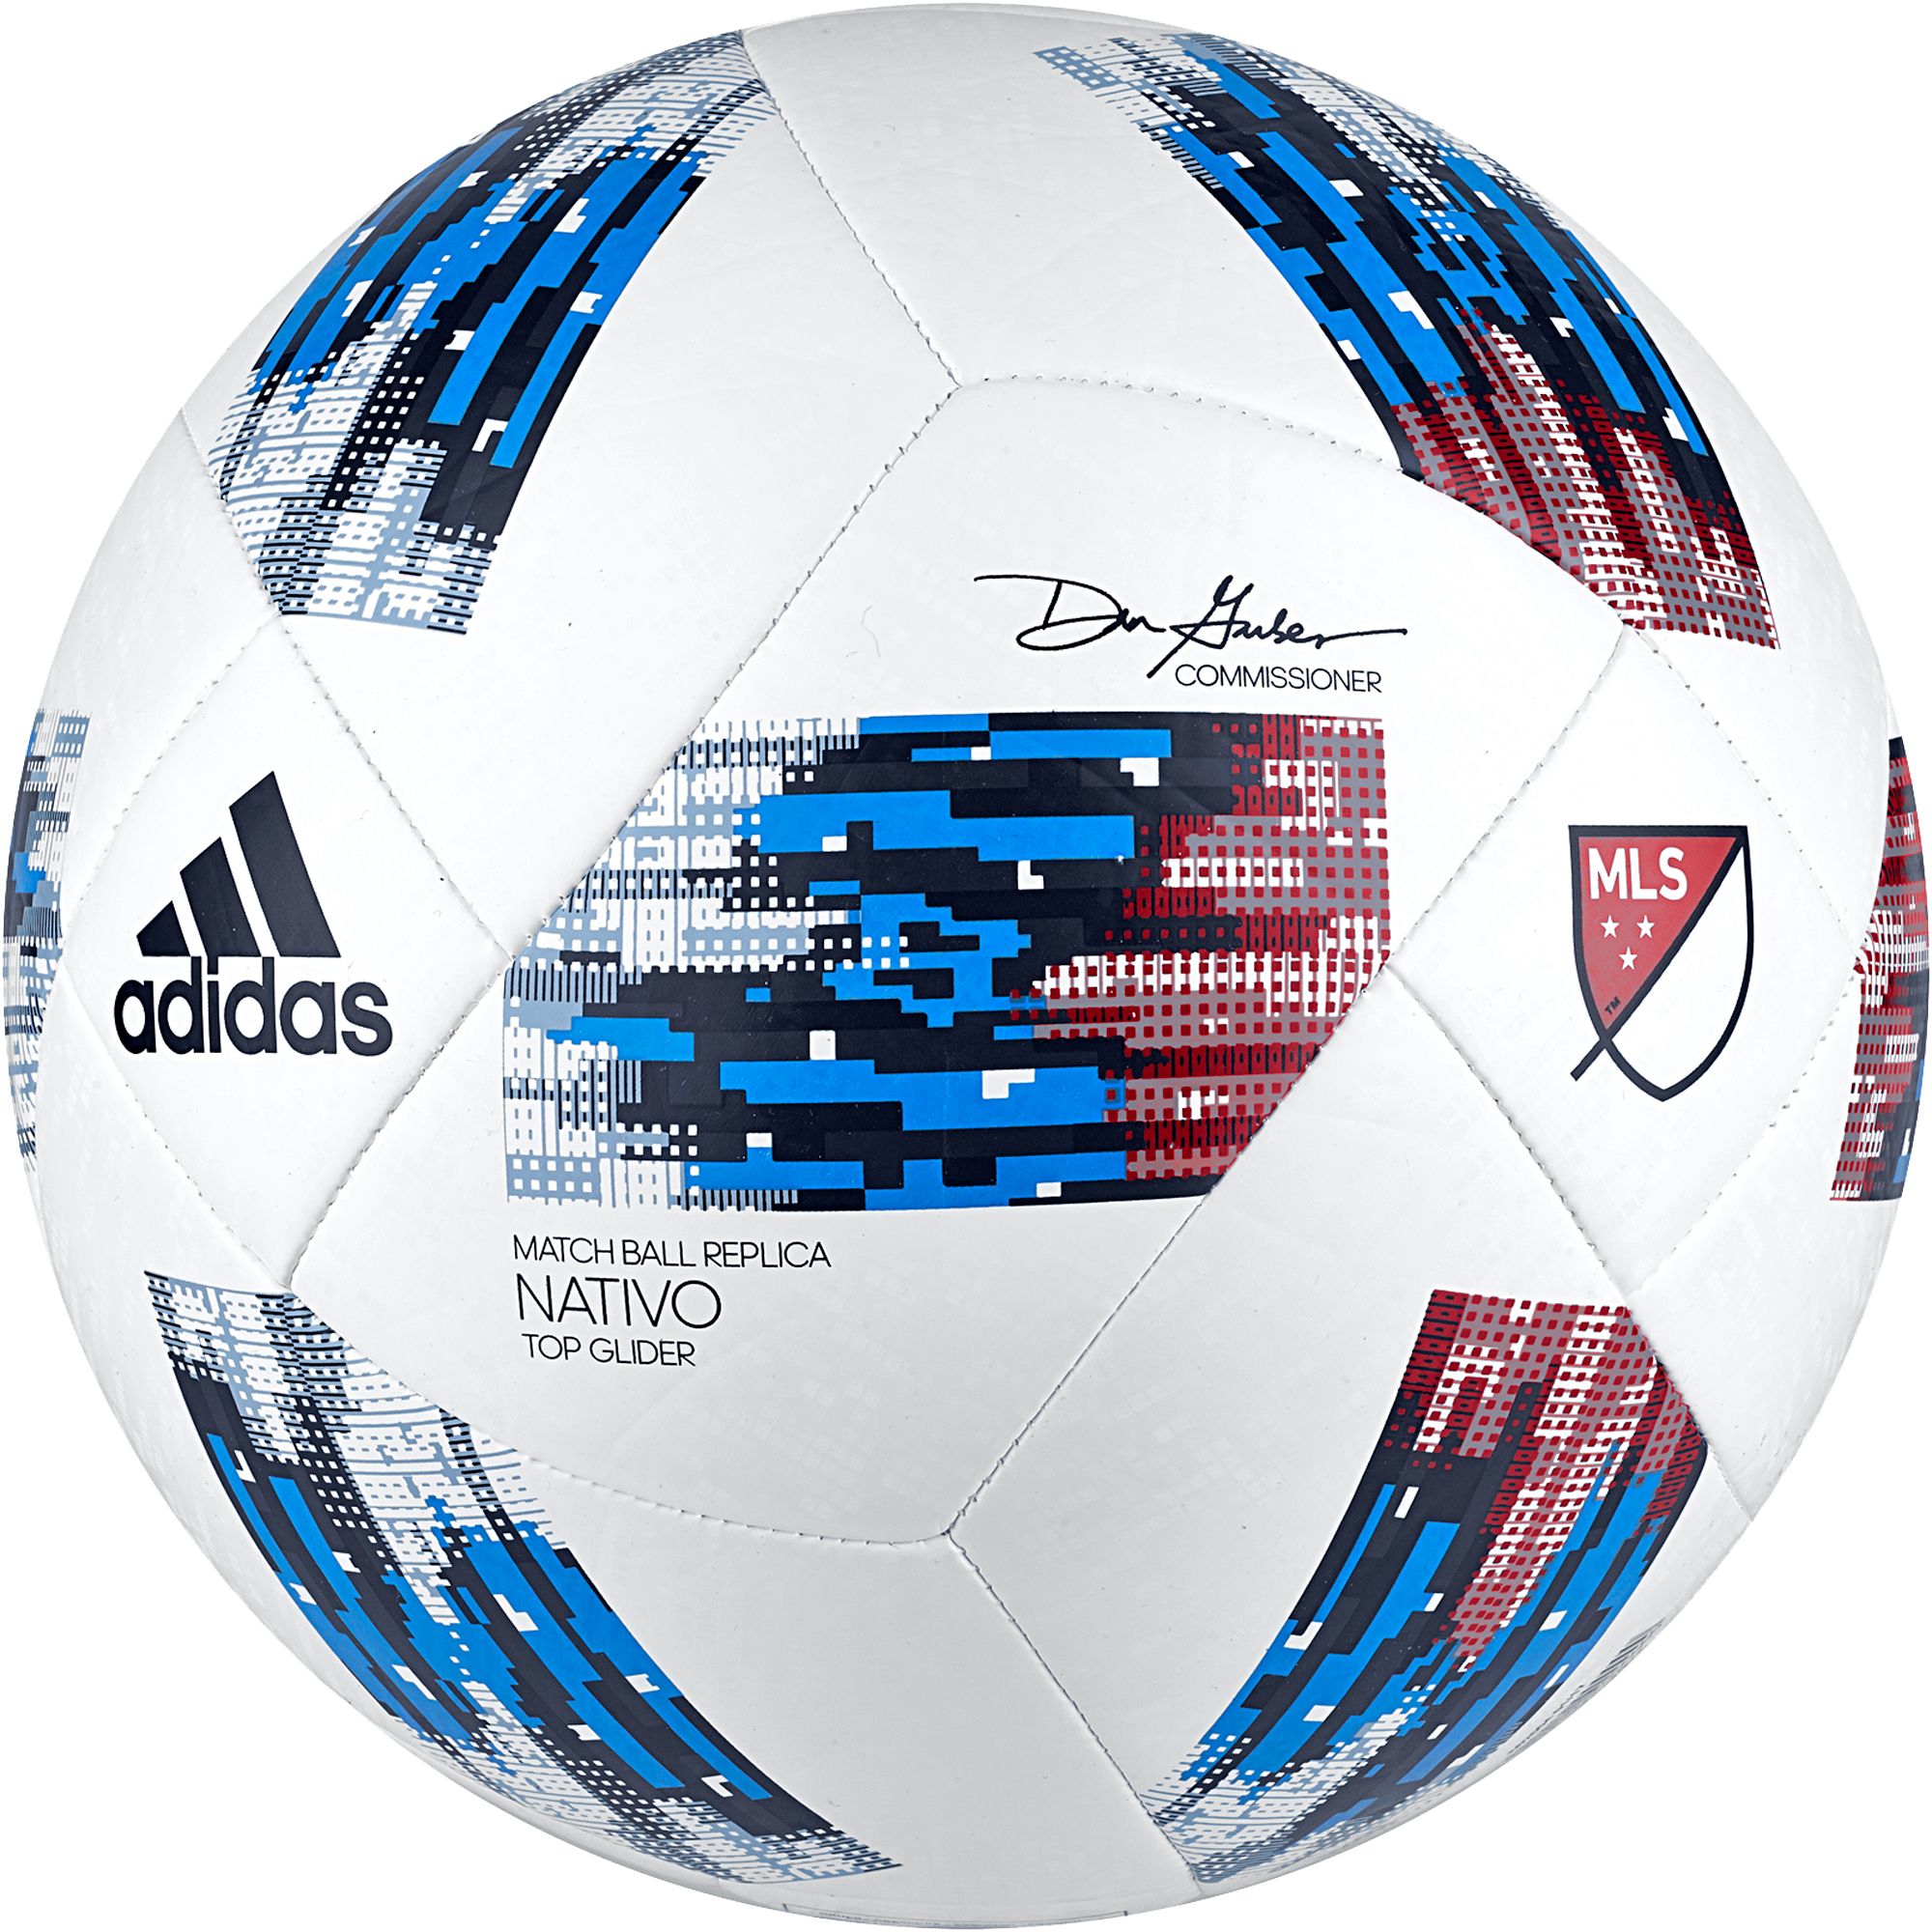 adidas soccer ball mls